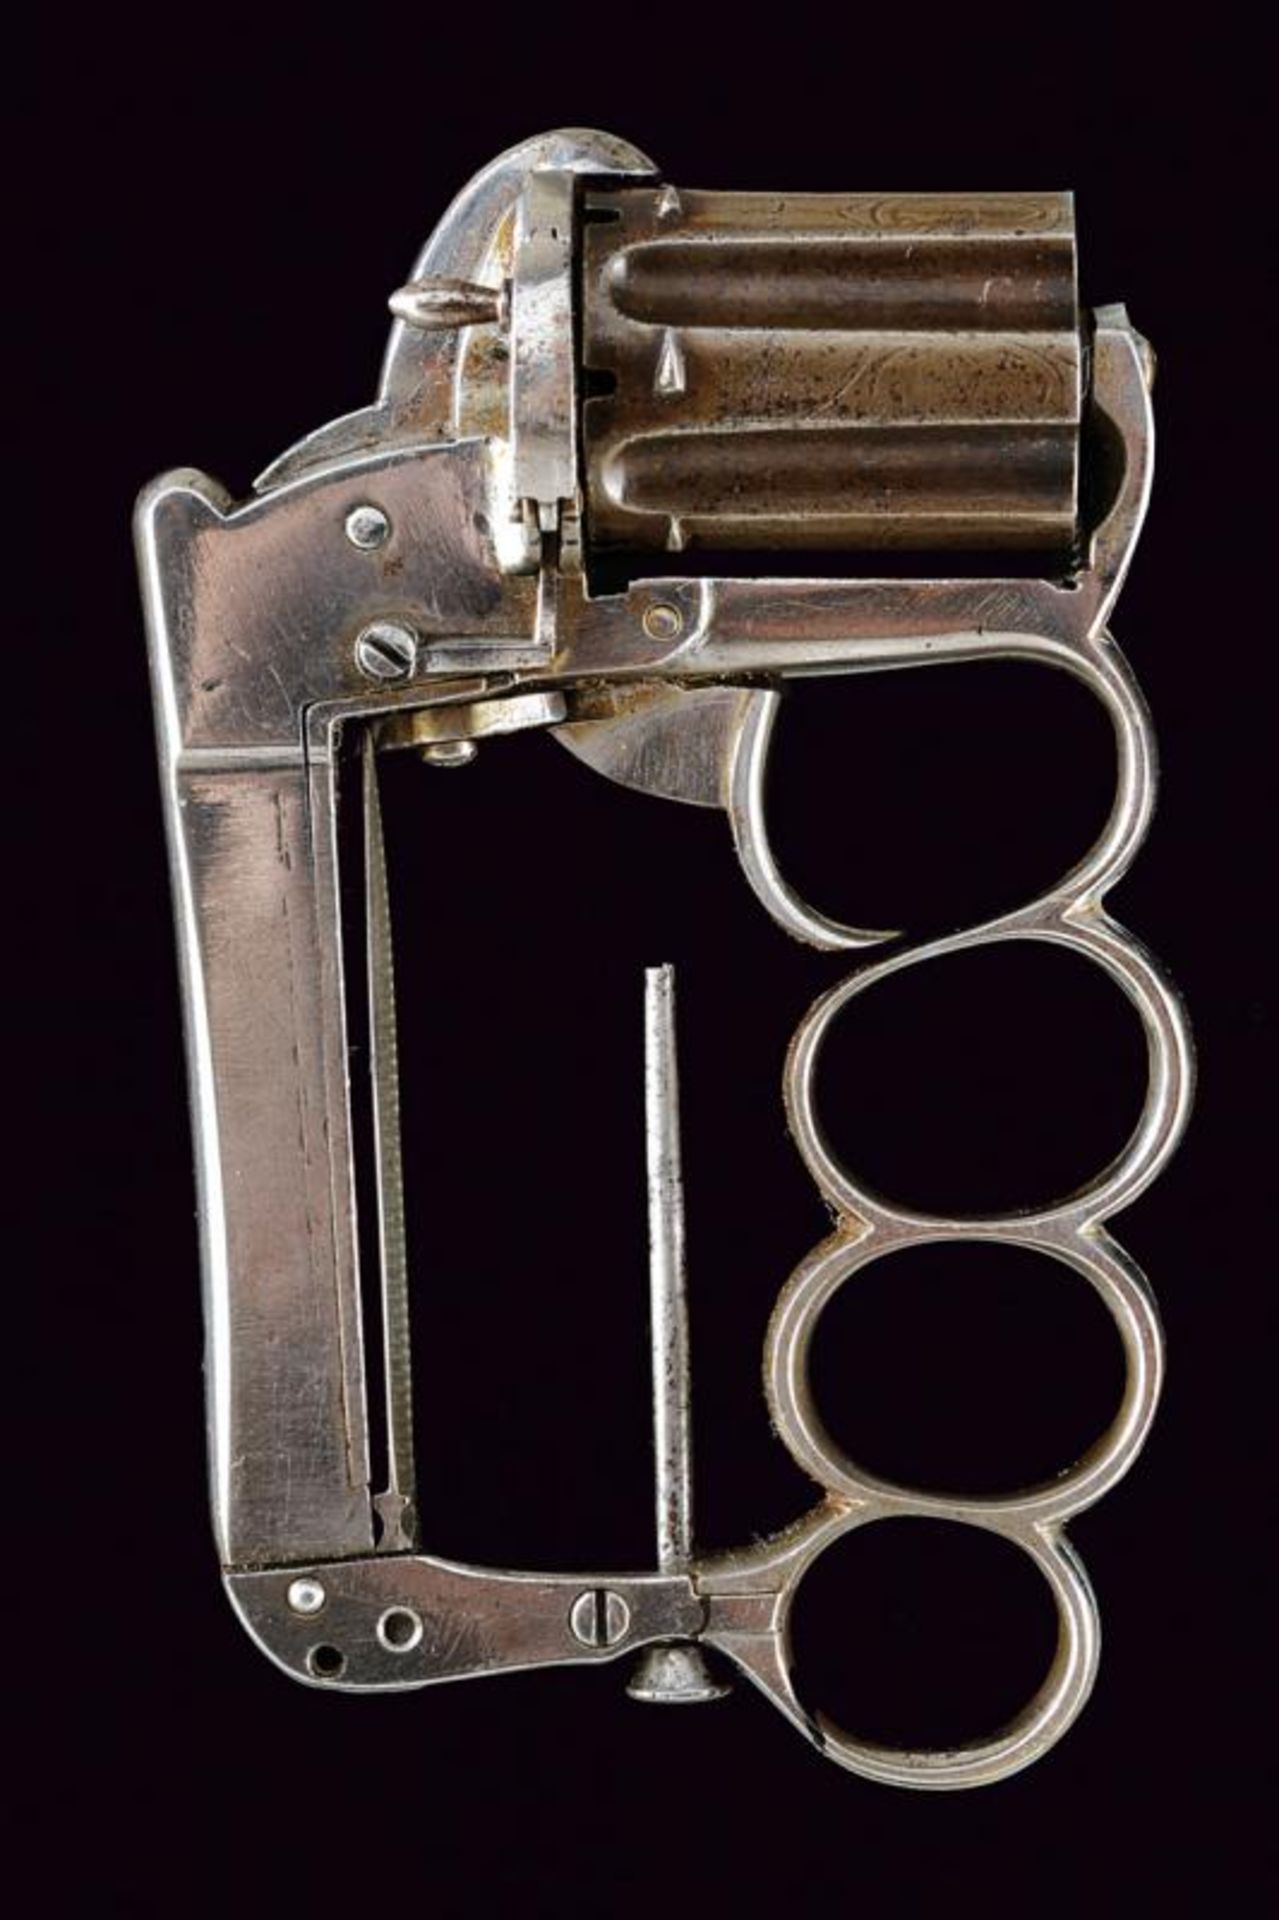 A very scarce Apache/Delhaxe type pepperbox revolver